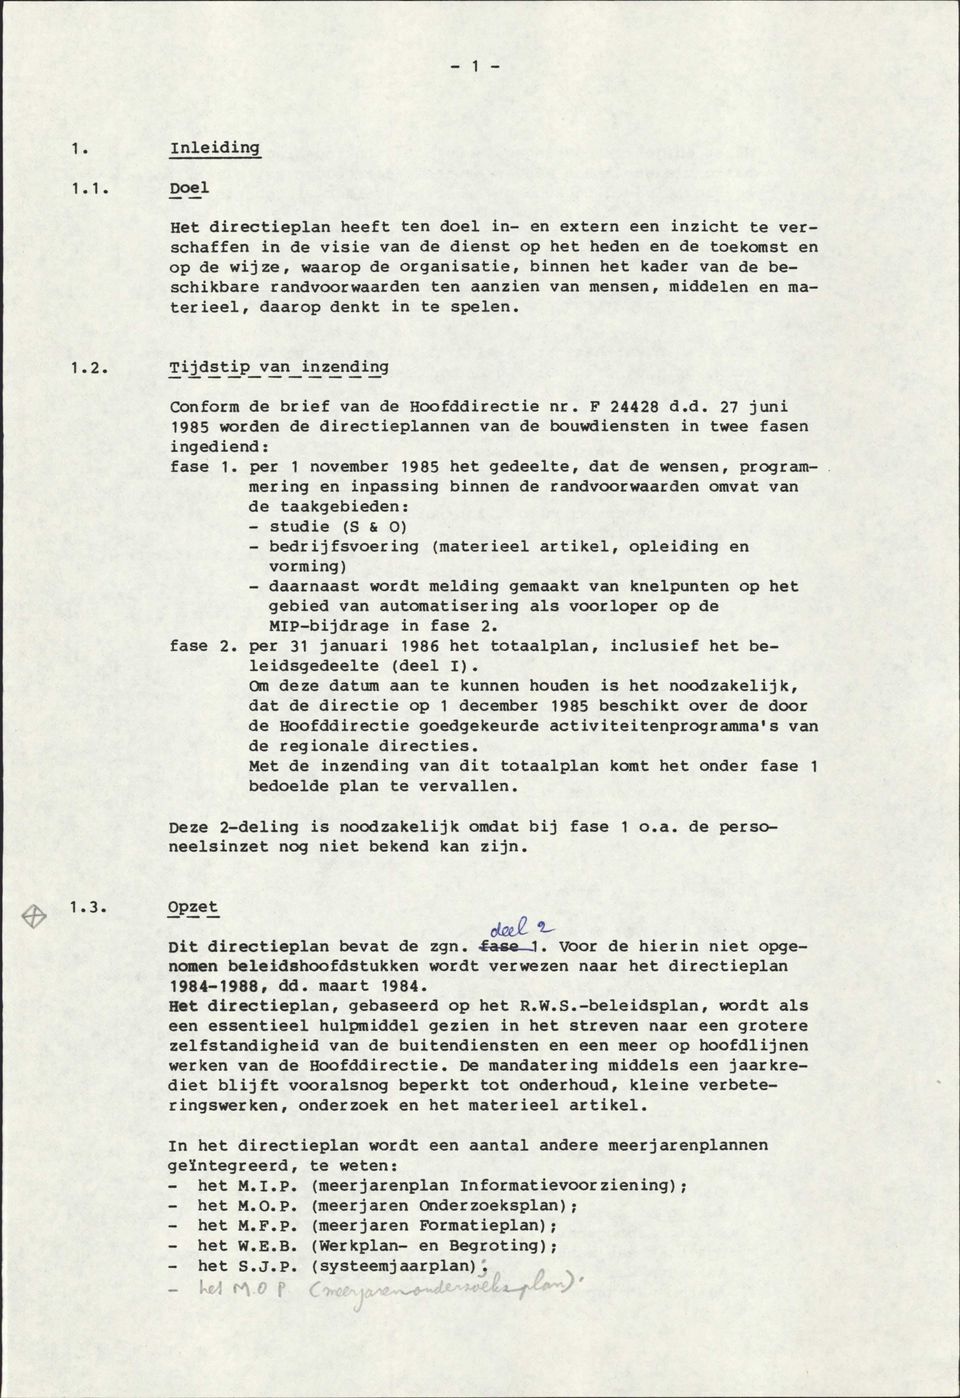 F 24428 d.d. 27 juni 1985 worden de directieplannen van de bouwdiensten in twee fasen ingediend: fase 1.